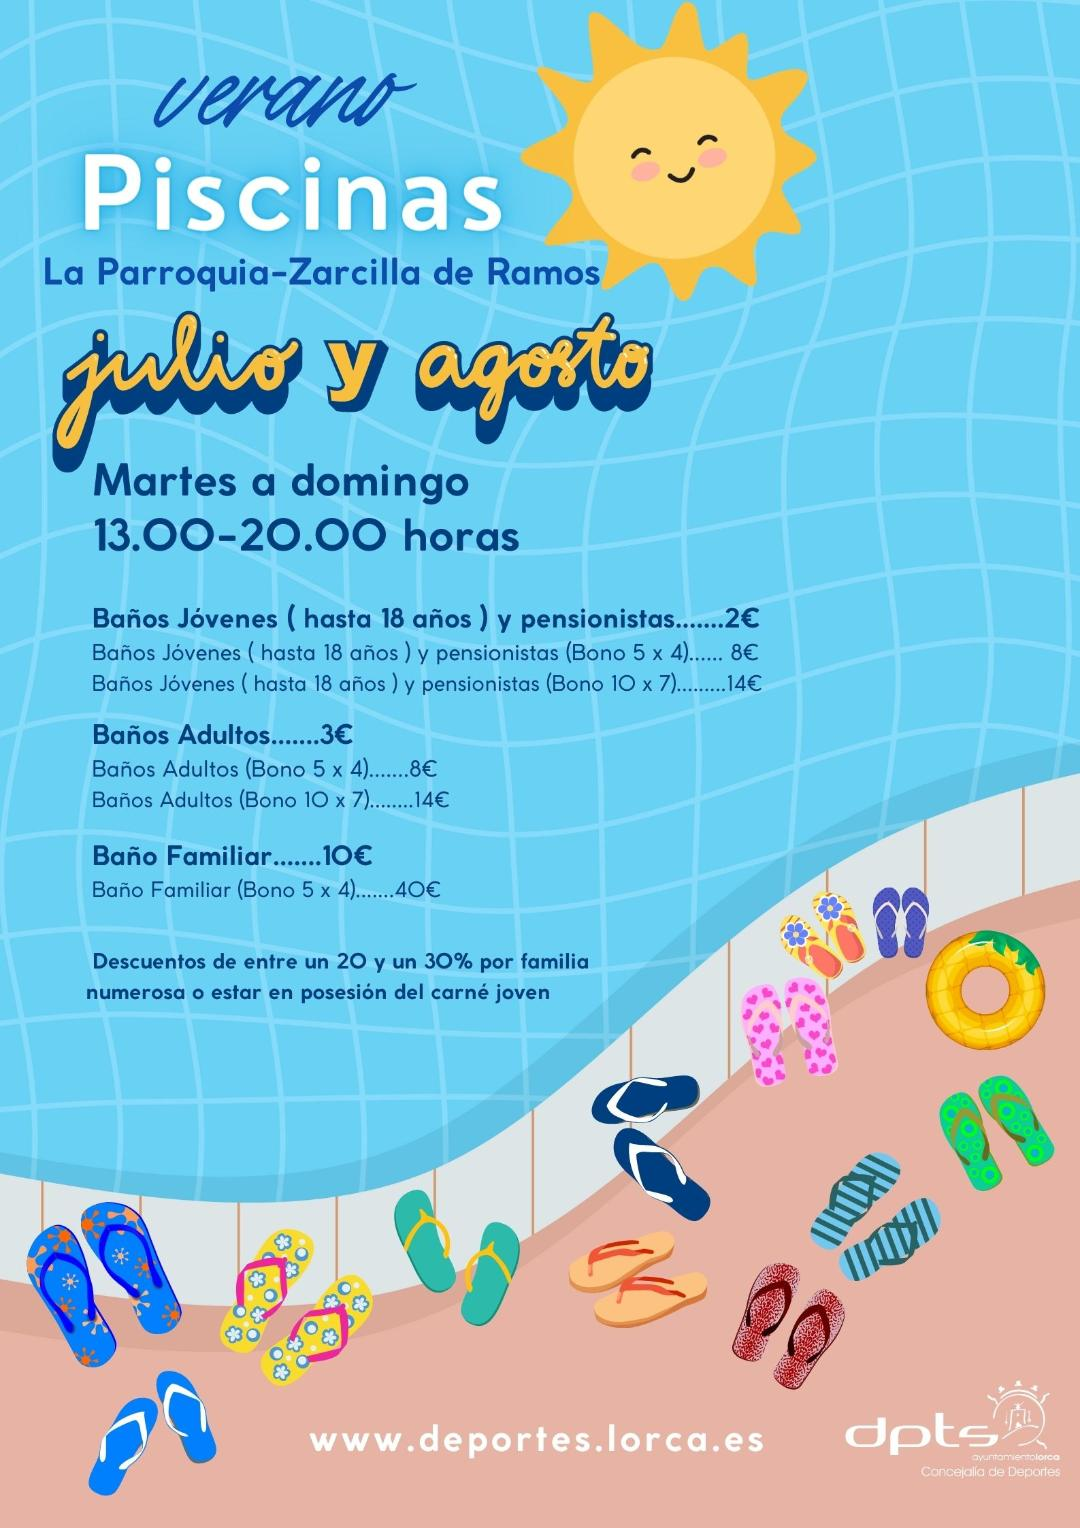 Las piscinas de Zarcilla de Ramos y La Parroquia abren sus puertas mañana en horario de martes a domingo de 13 a 20 horas